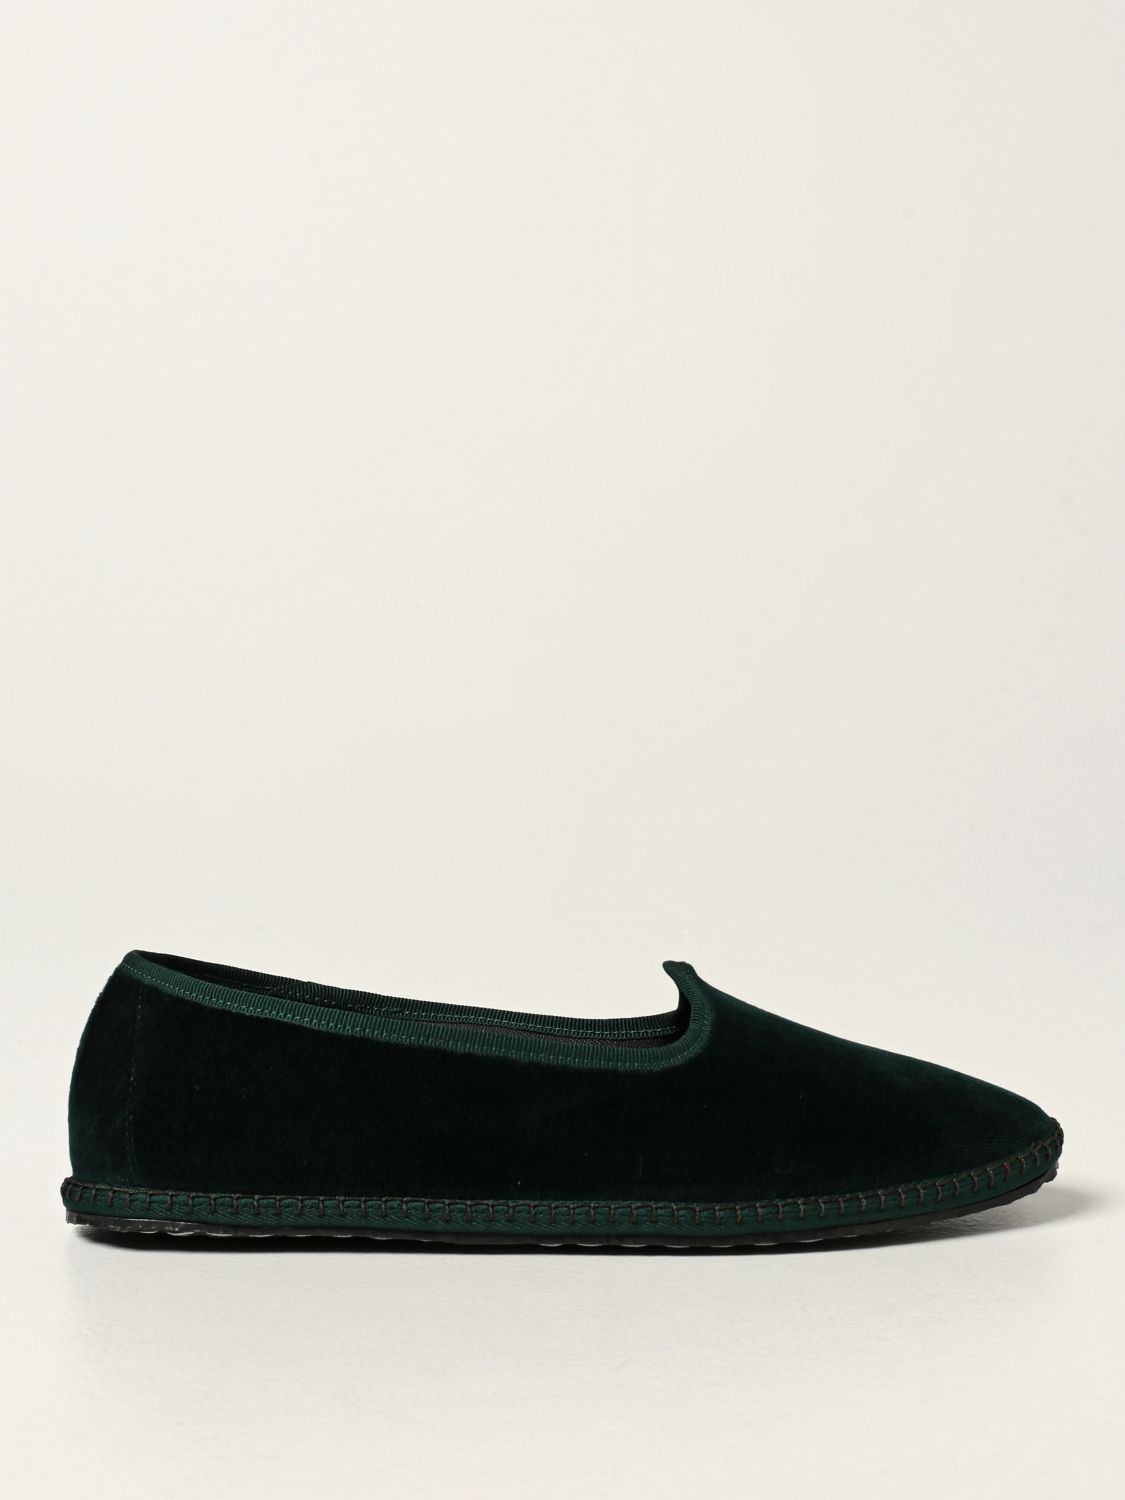 Мокасины Vibi Venezia: Обувь Женское Vibivenezia зеленый 1